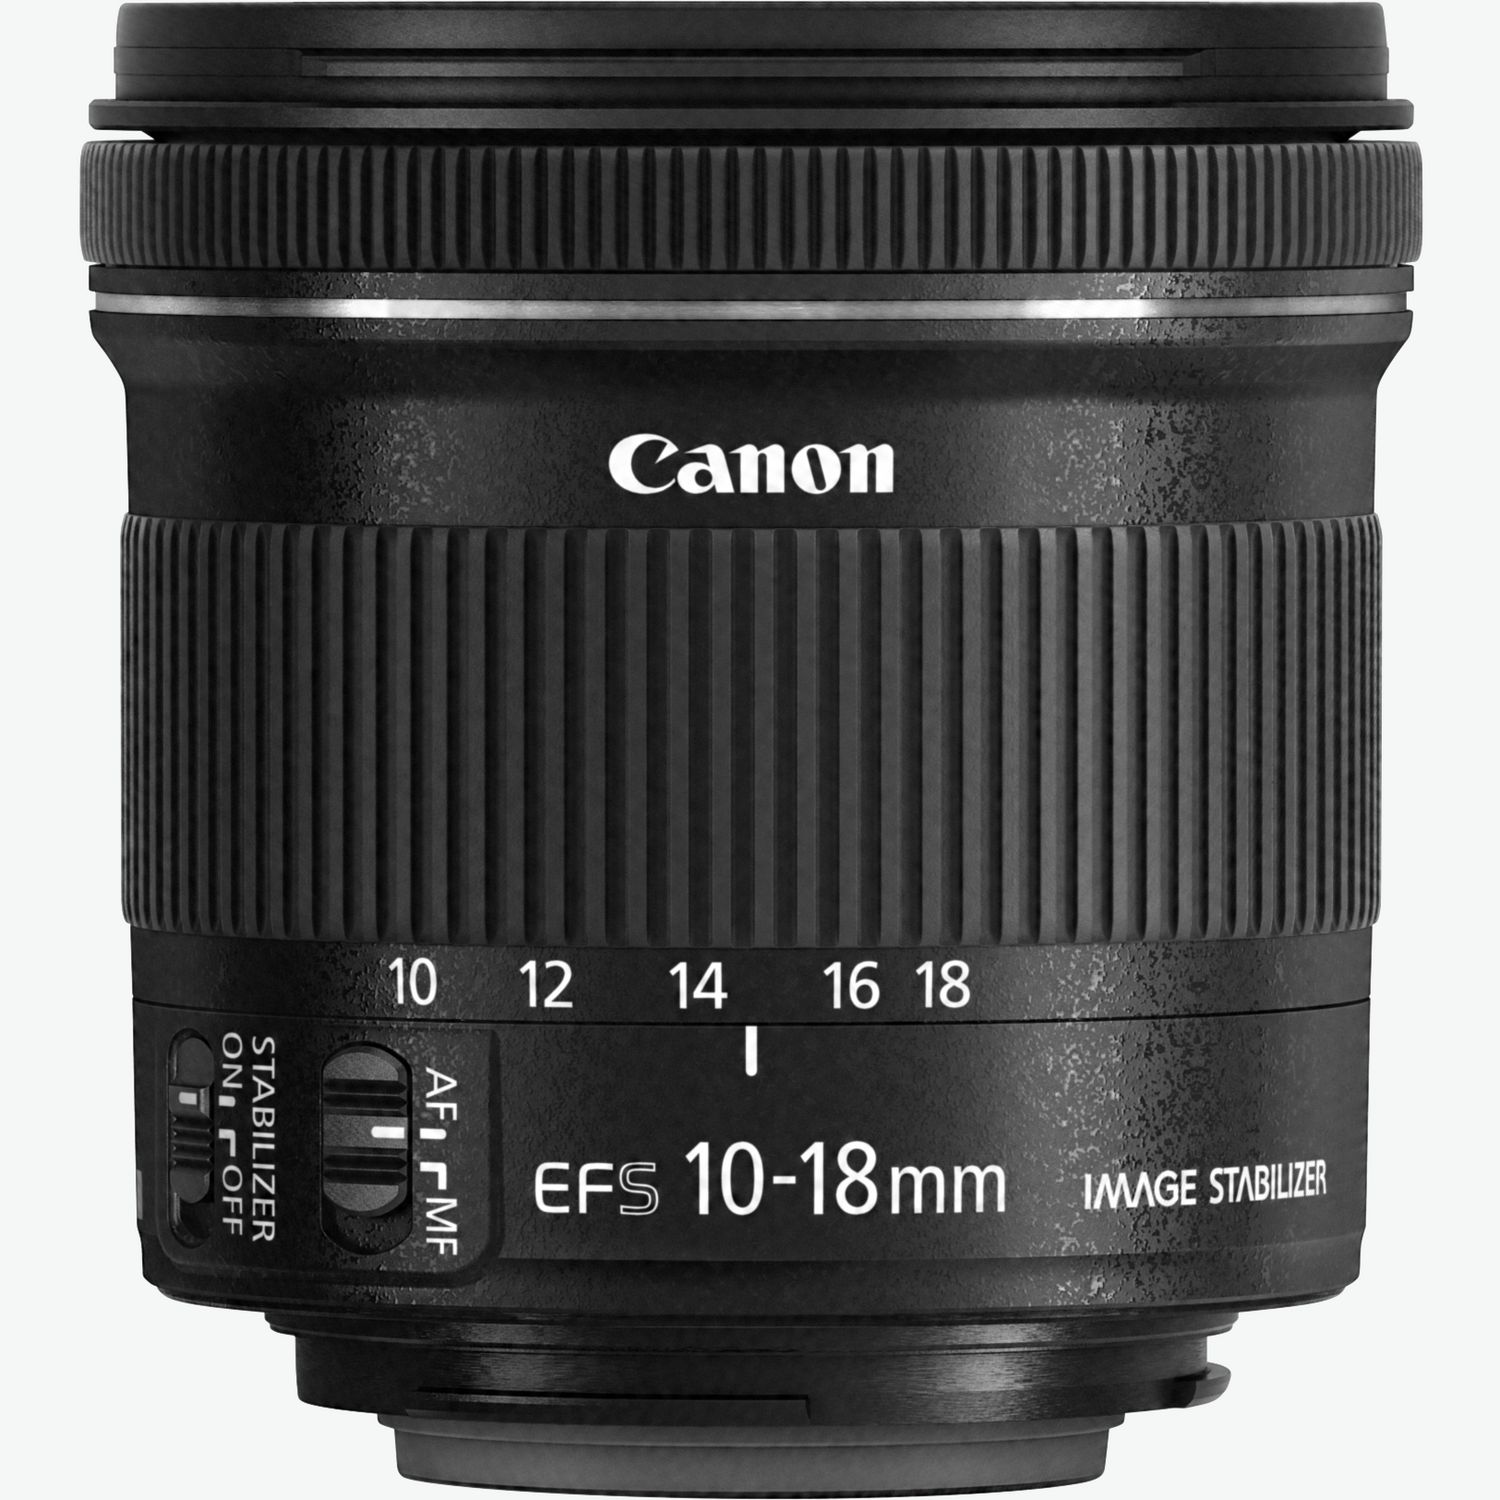 Canon EOS 2000D - Cameras - Canon Europe